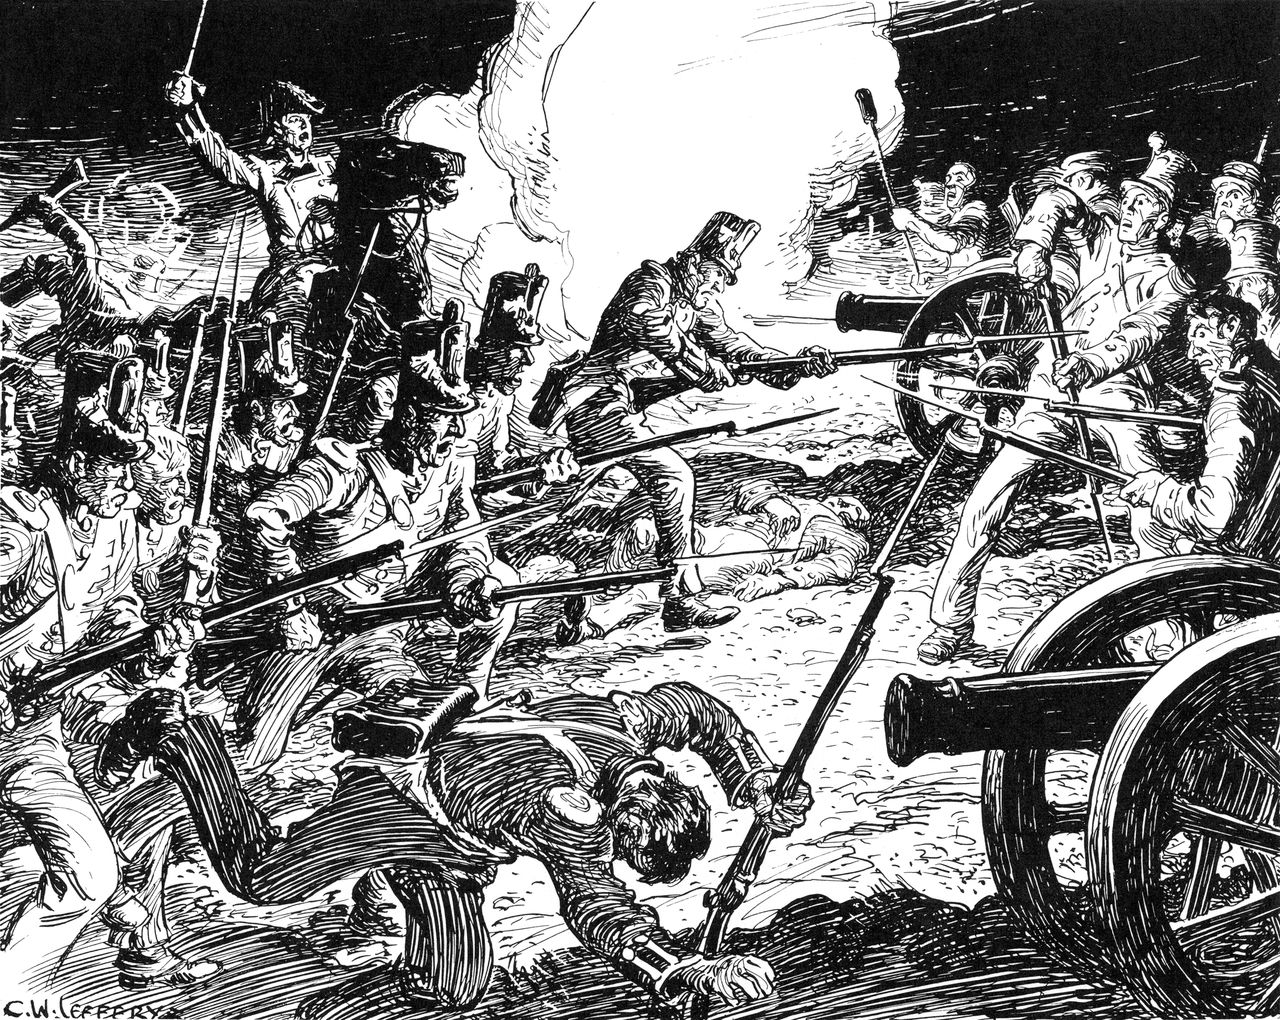 Dessin en noir et blanc mettant en scène plusieurs hommes qui combattent, armés de fusils et de canons, sur un champ de bataille.